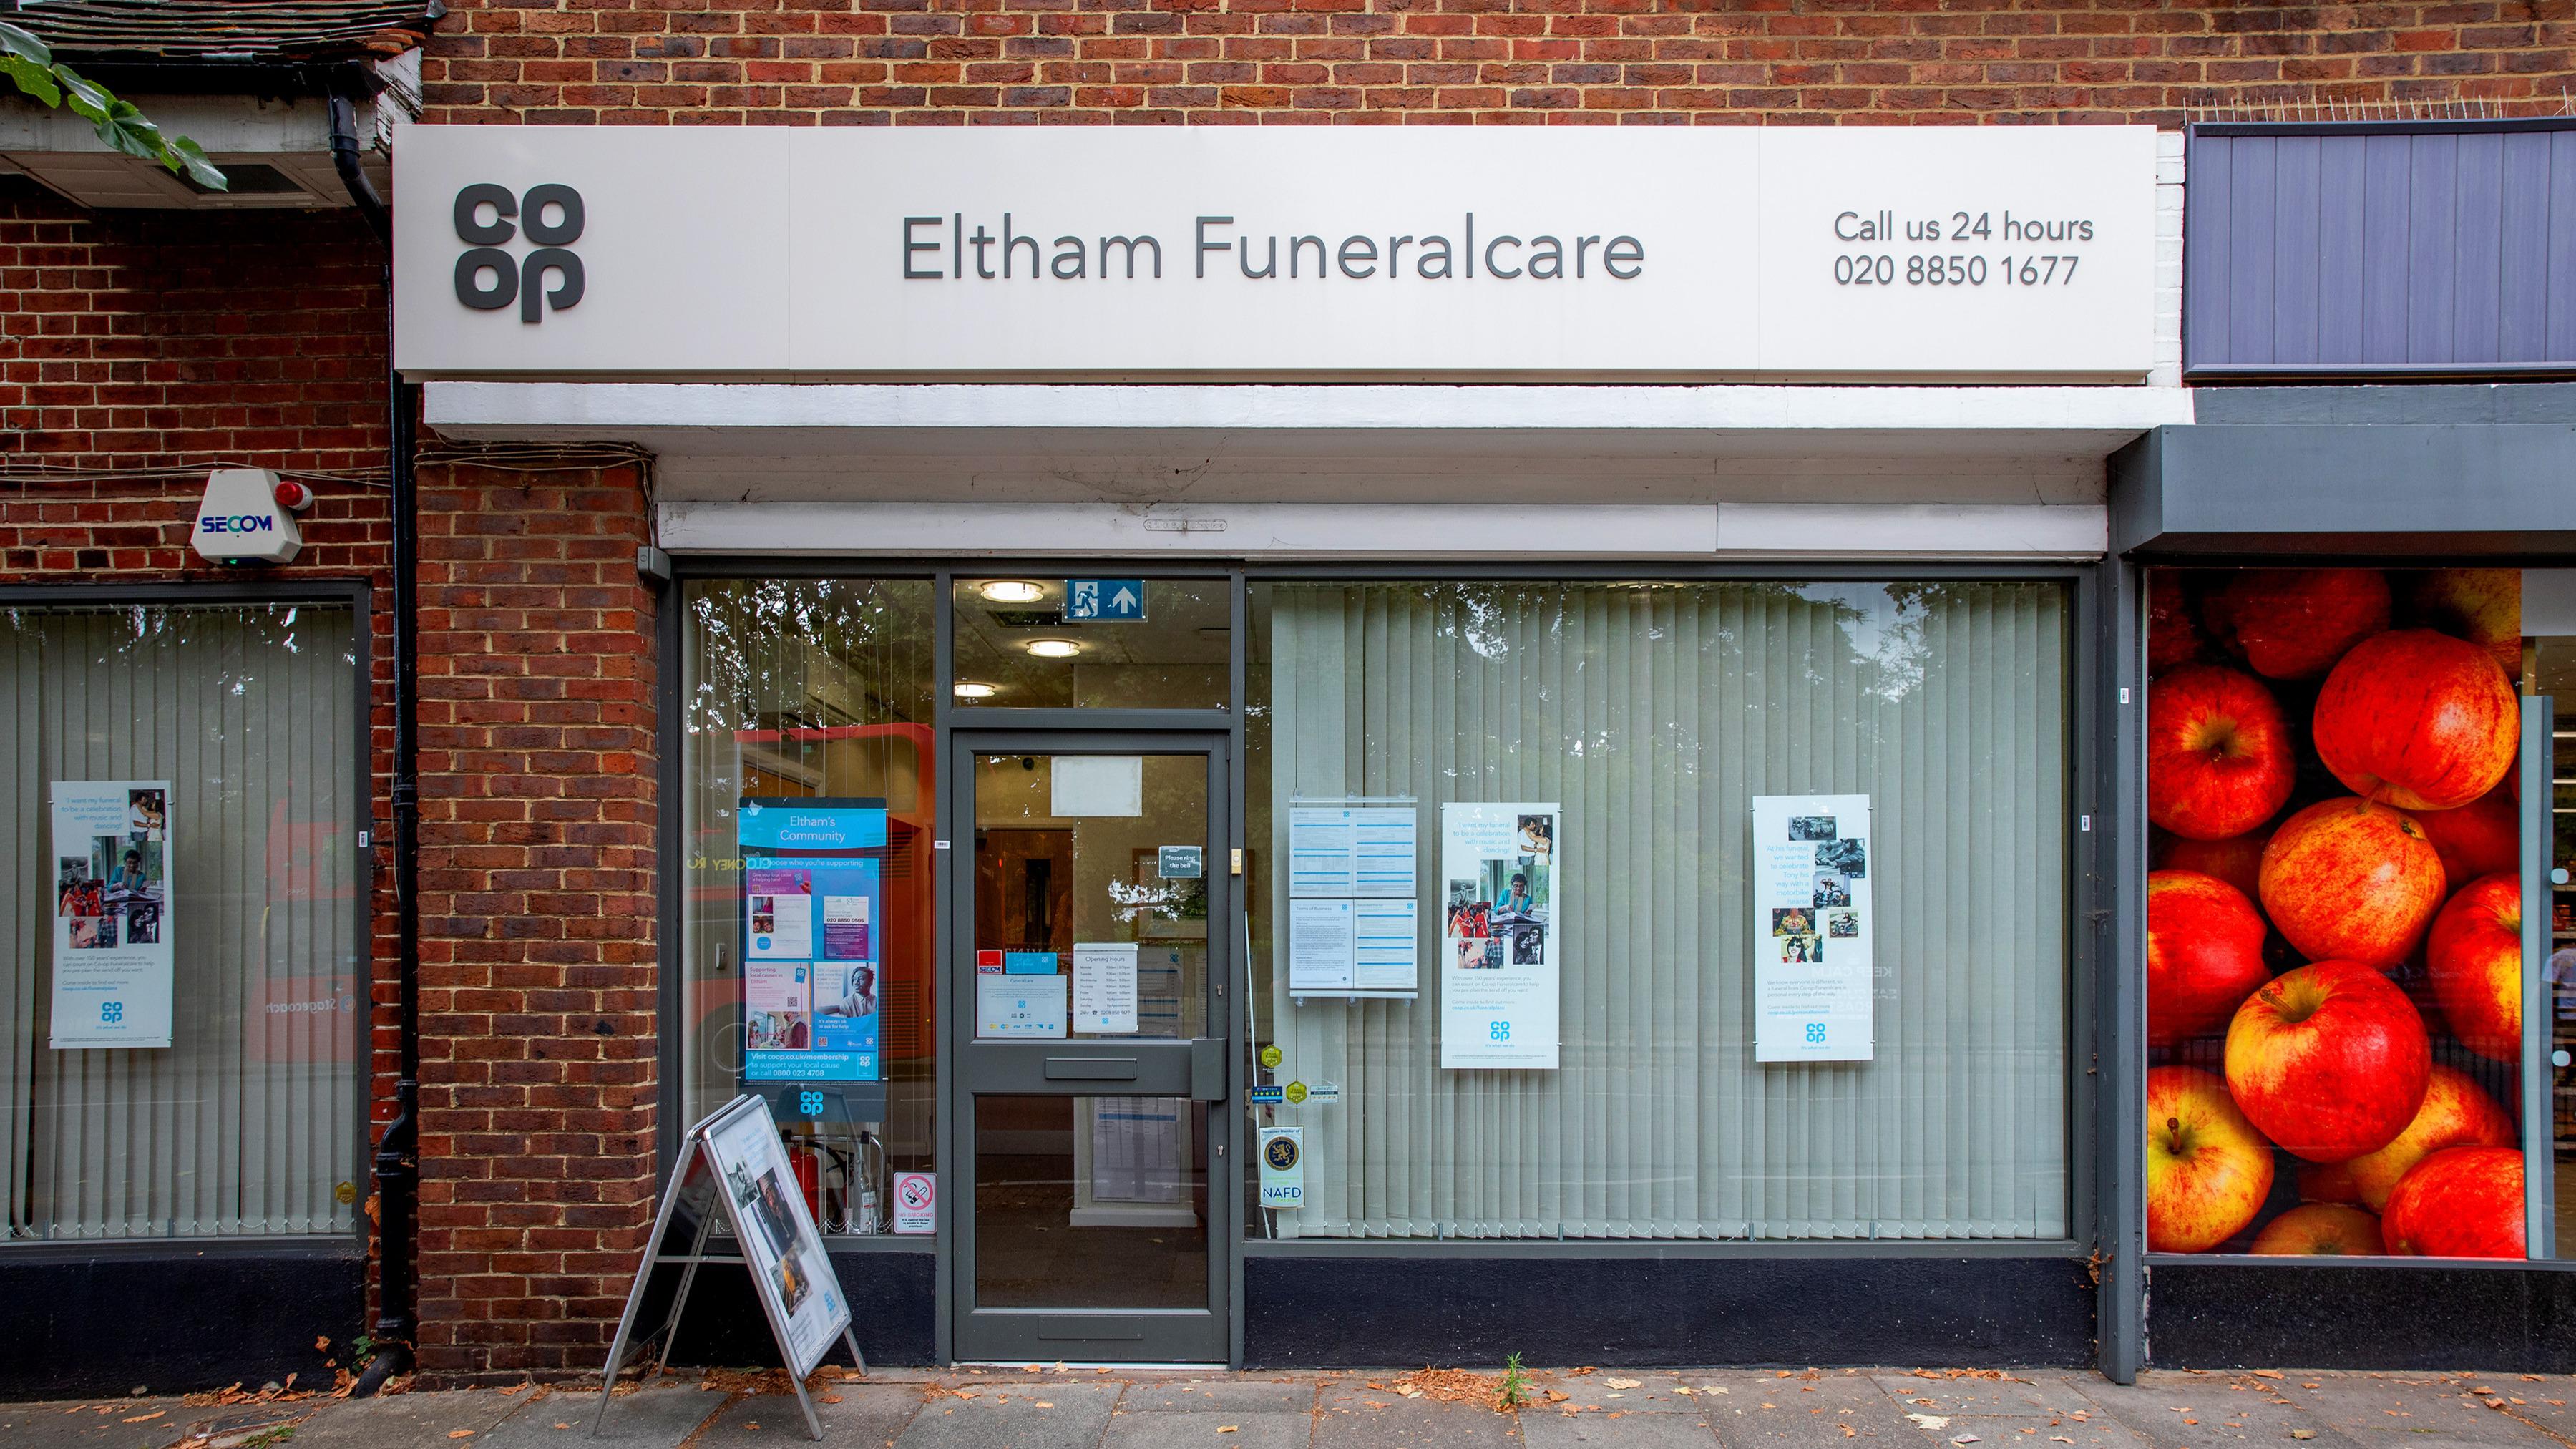 Eltham Funeralcare Eltham Funeralcare Eltham 020 8850 1677